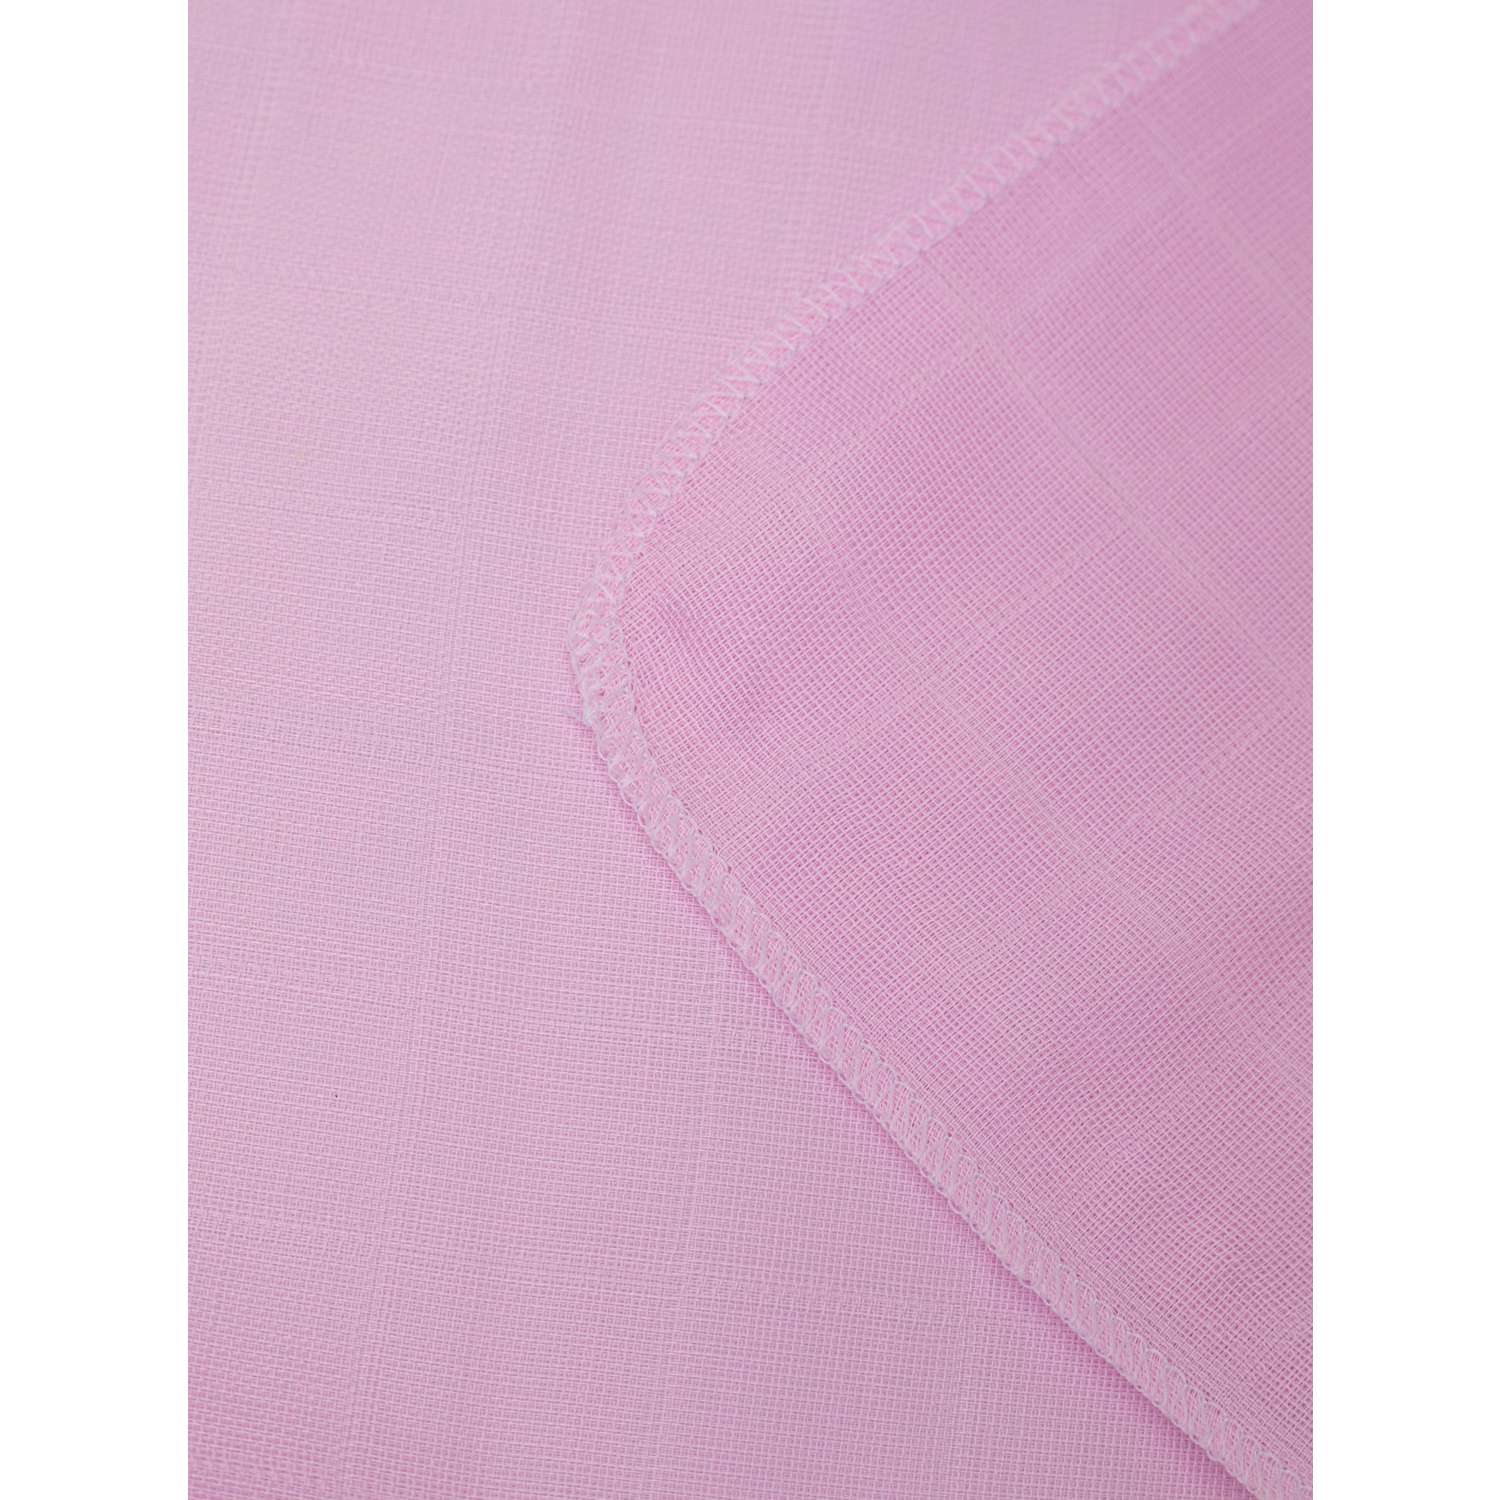 Муслиновые платочки Про Сон платочки муслин розовые - фото 3